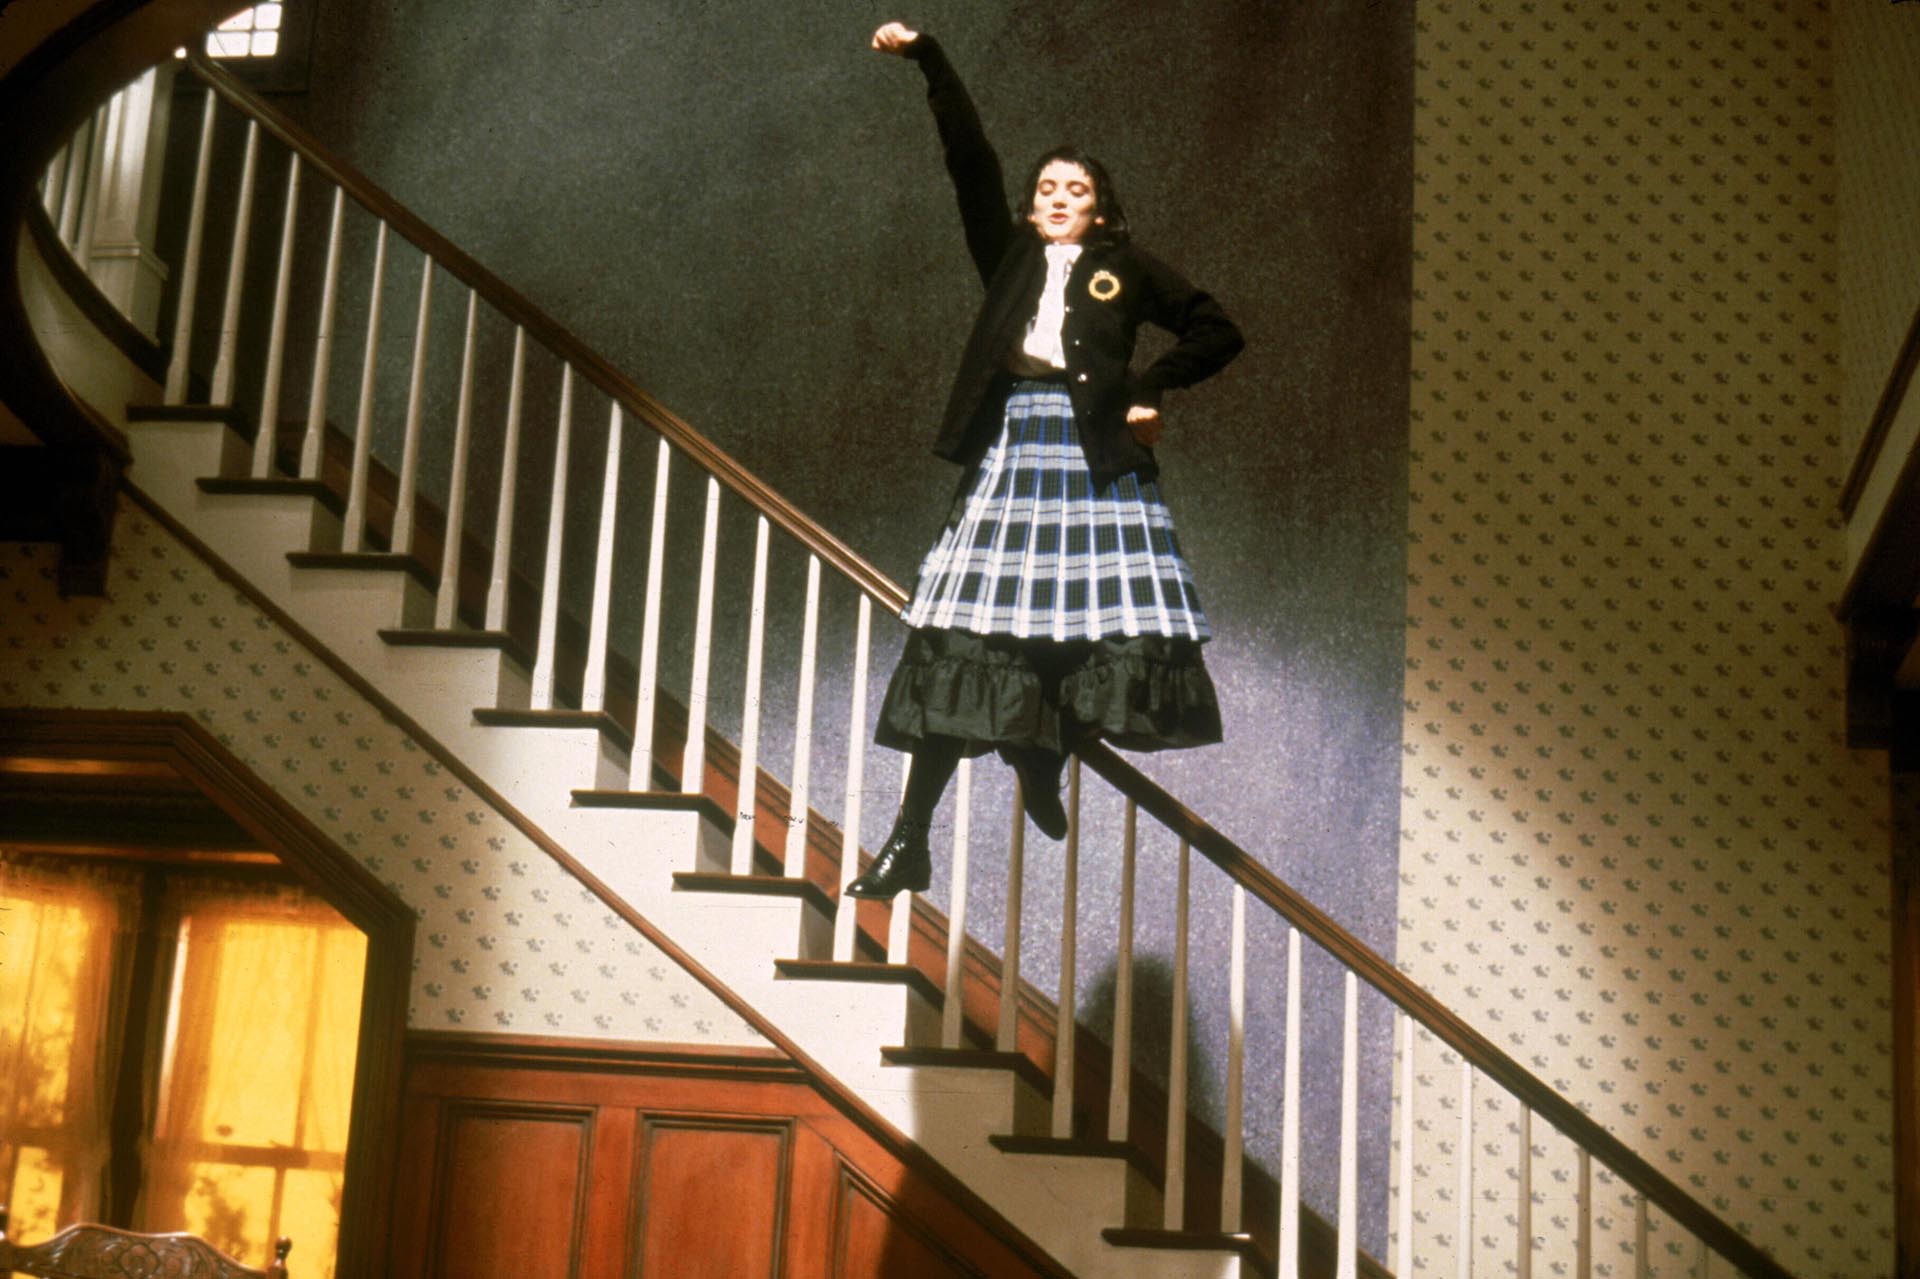 Winona Ryder en una escena de "Beetlejuice", en 1988 (Shutterstock)